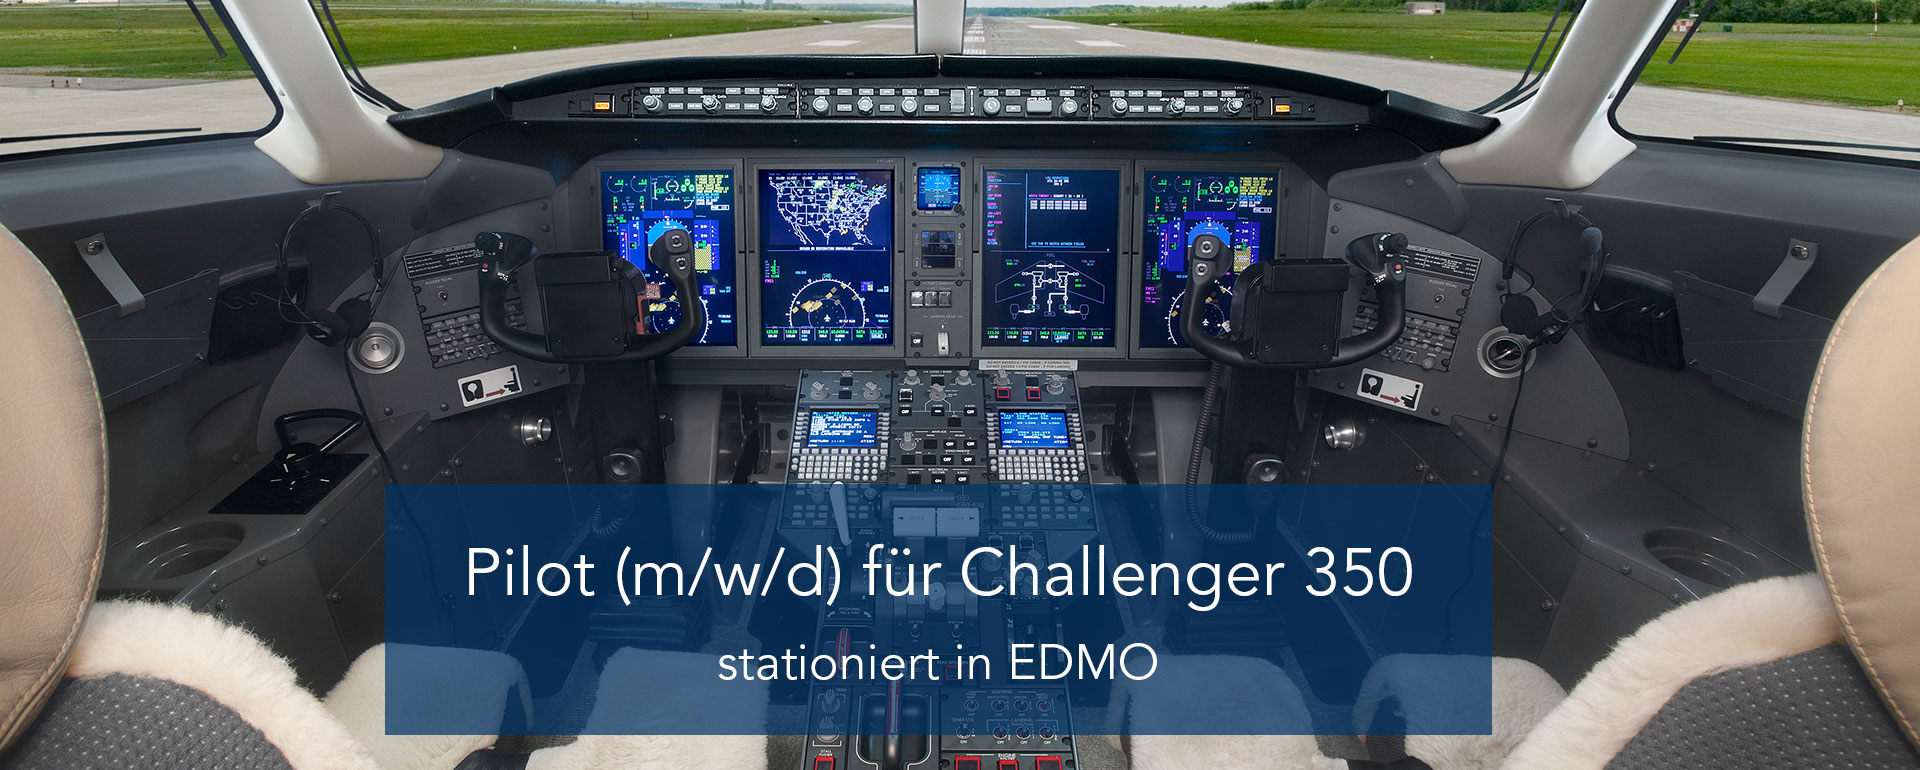 Pilot (m/w/d) für Challenger 350 | stationiert in EDDN